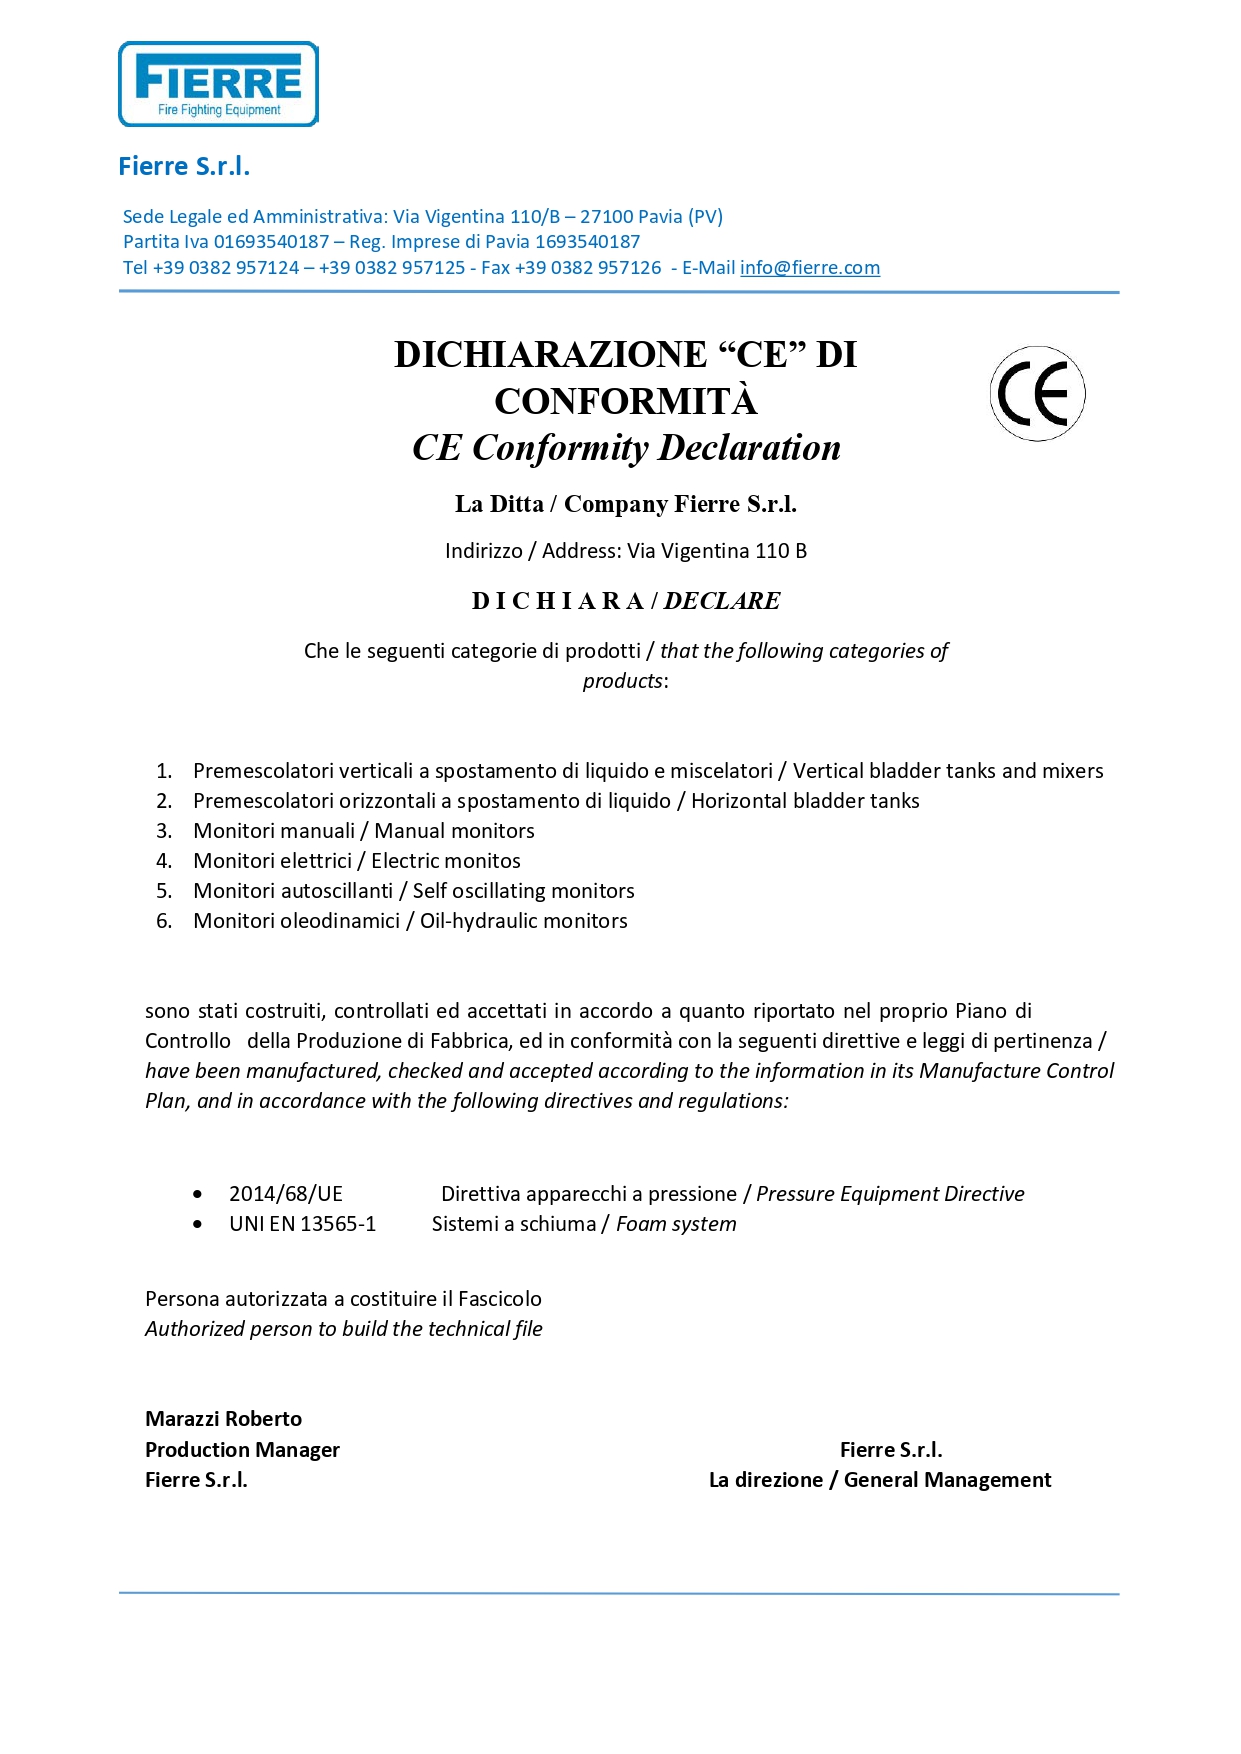 CE Conformity Declaration